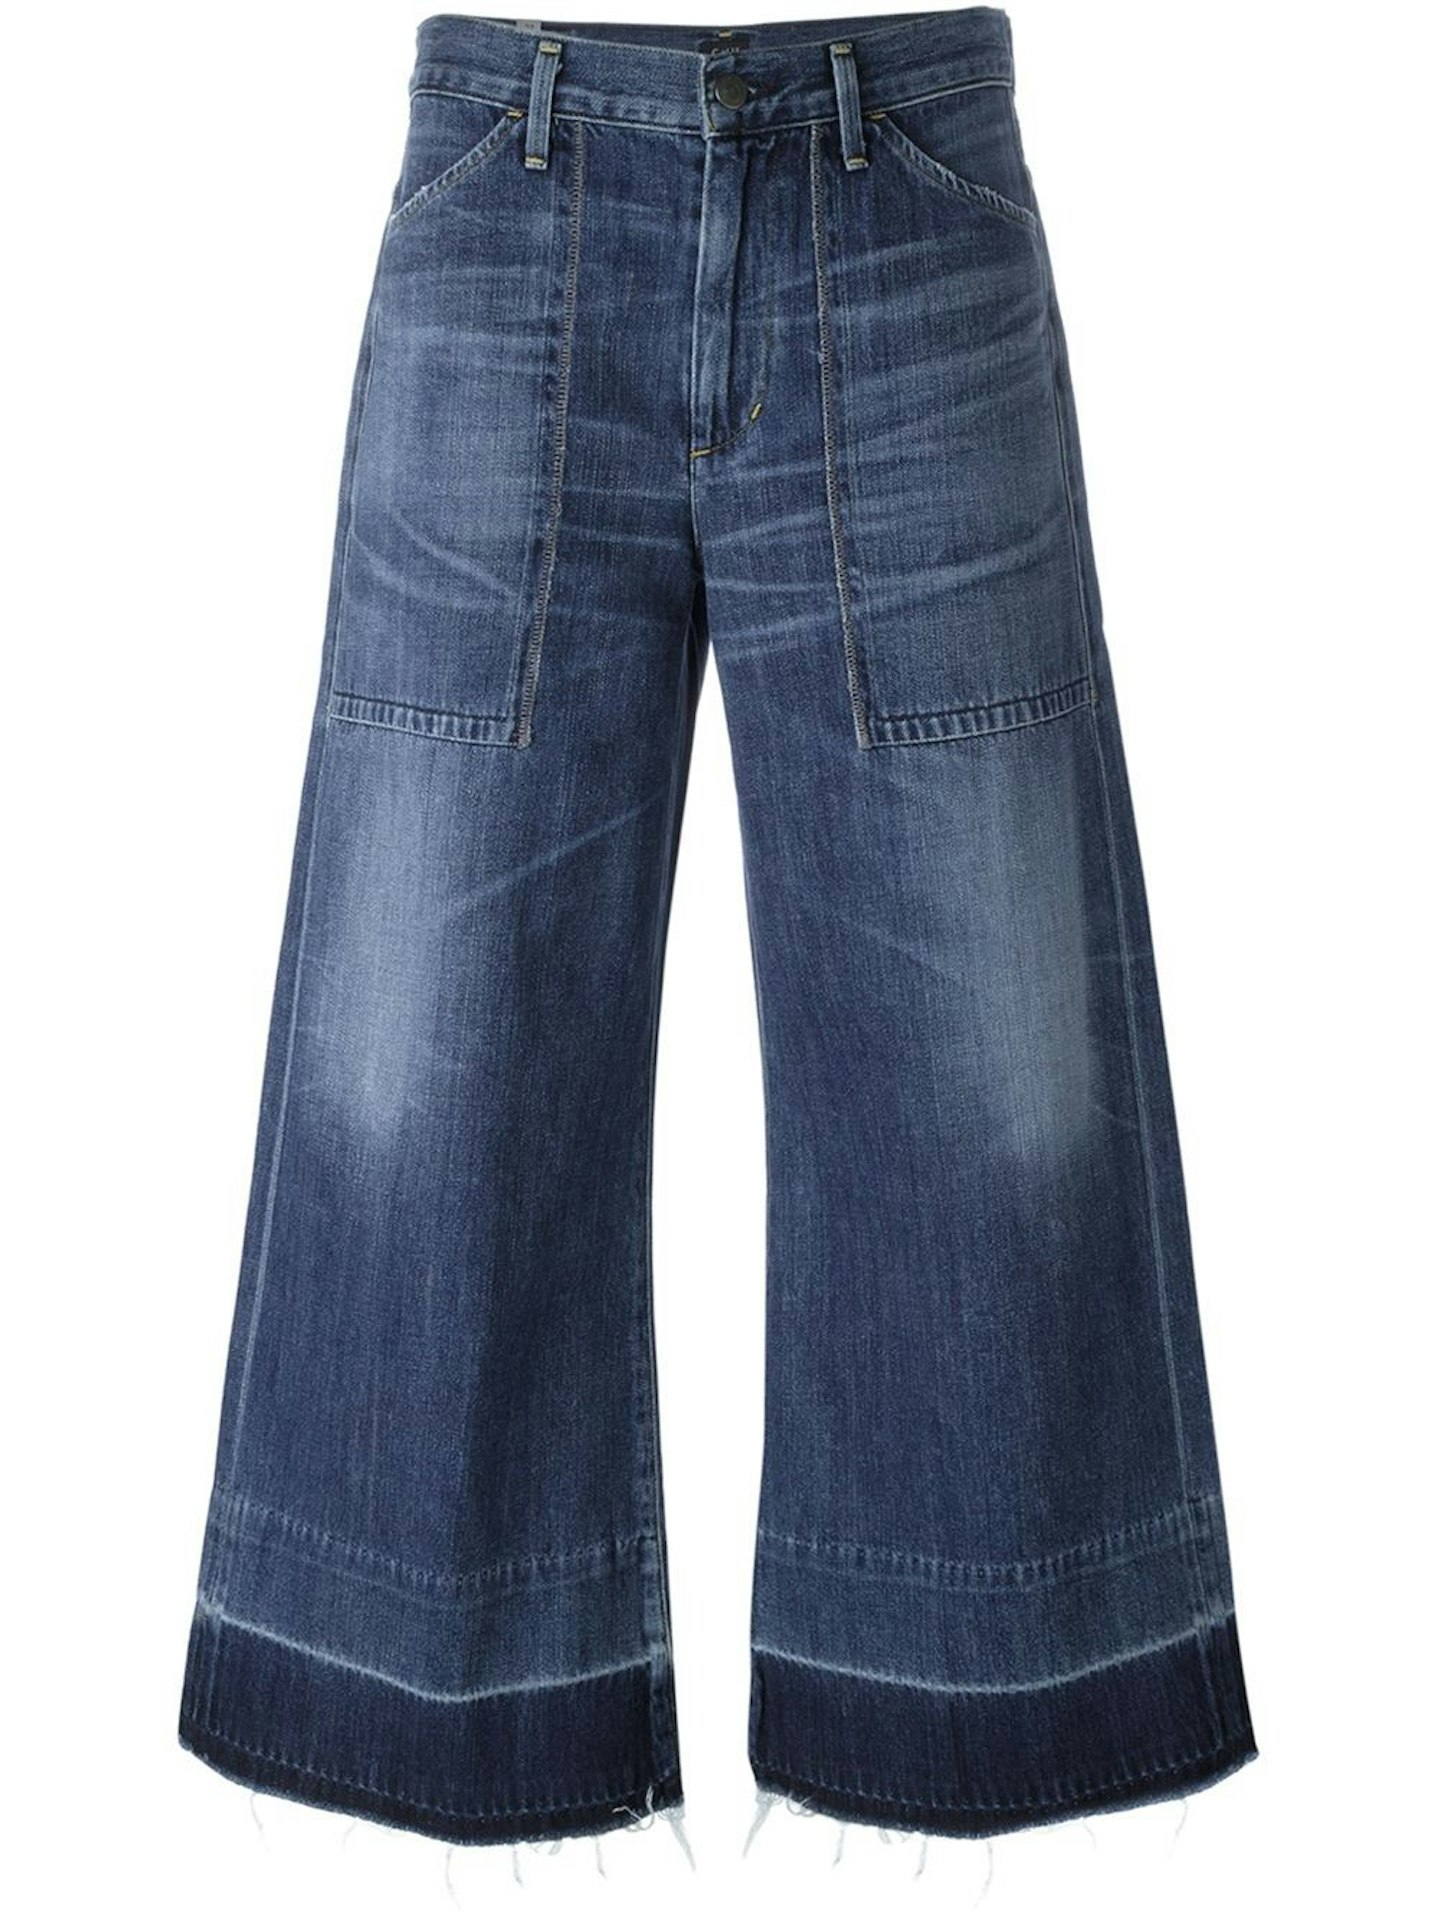 Selena Gomez Louis Vuitton Patchwork Jeans